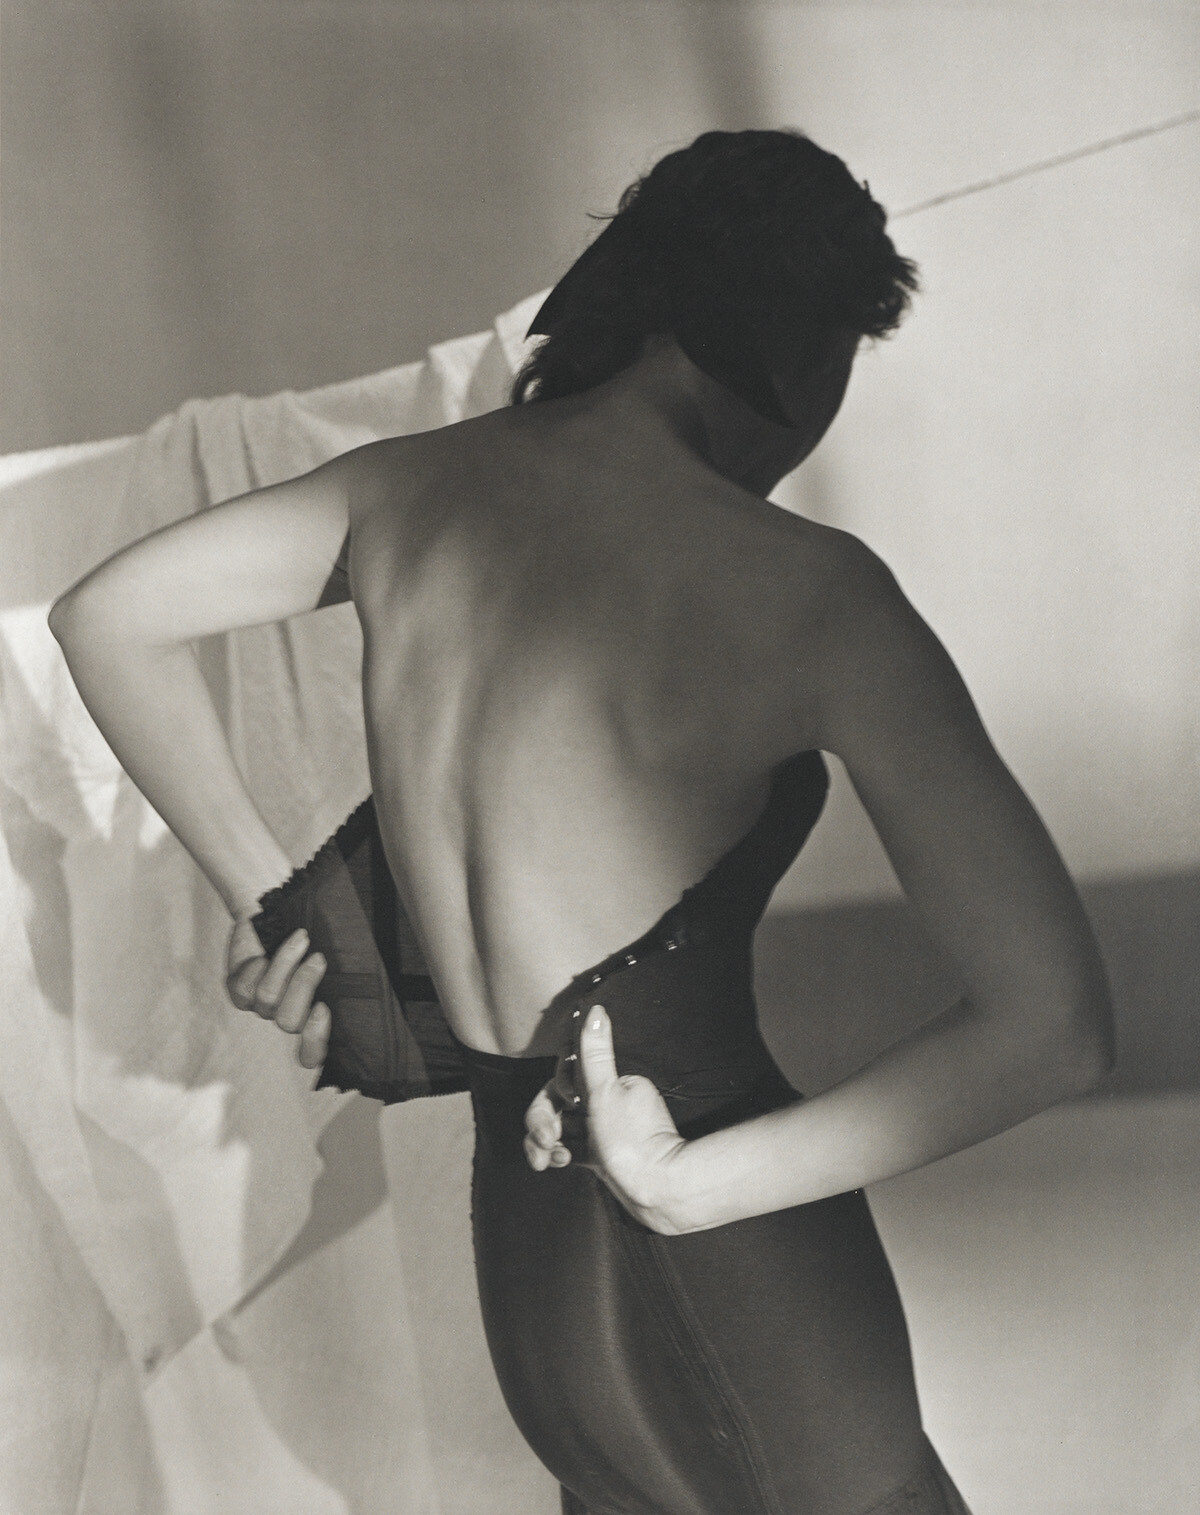 Чёрный корсет, 1948. Фотограф Хорст П. Хорст